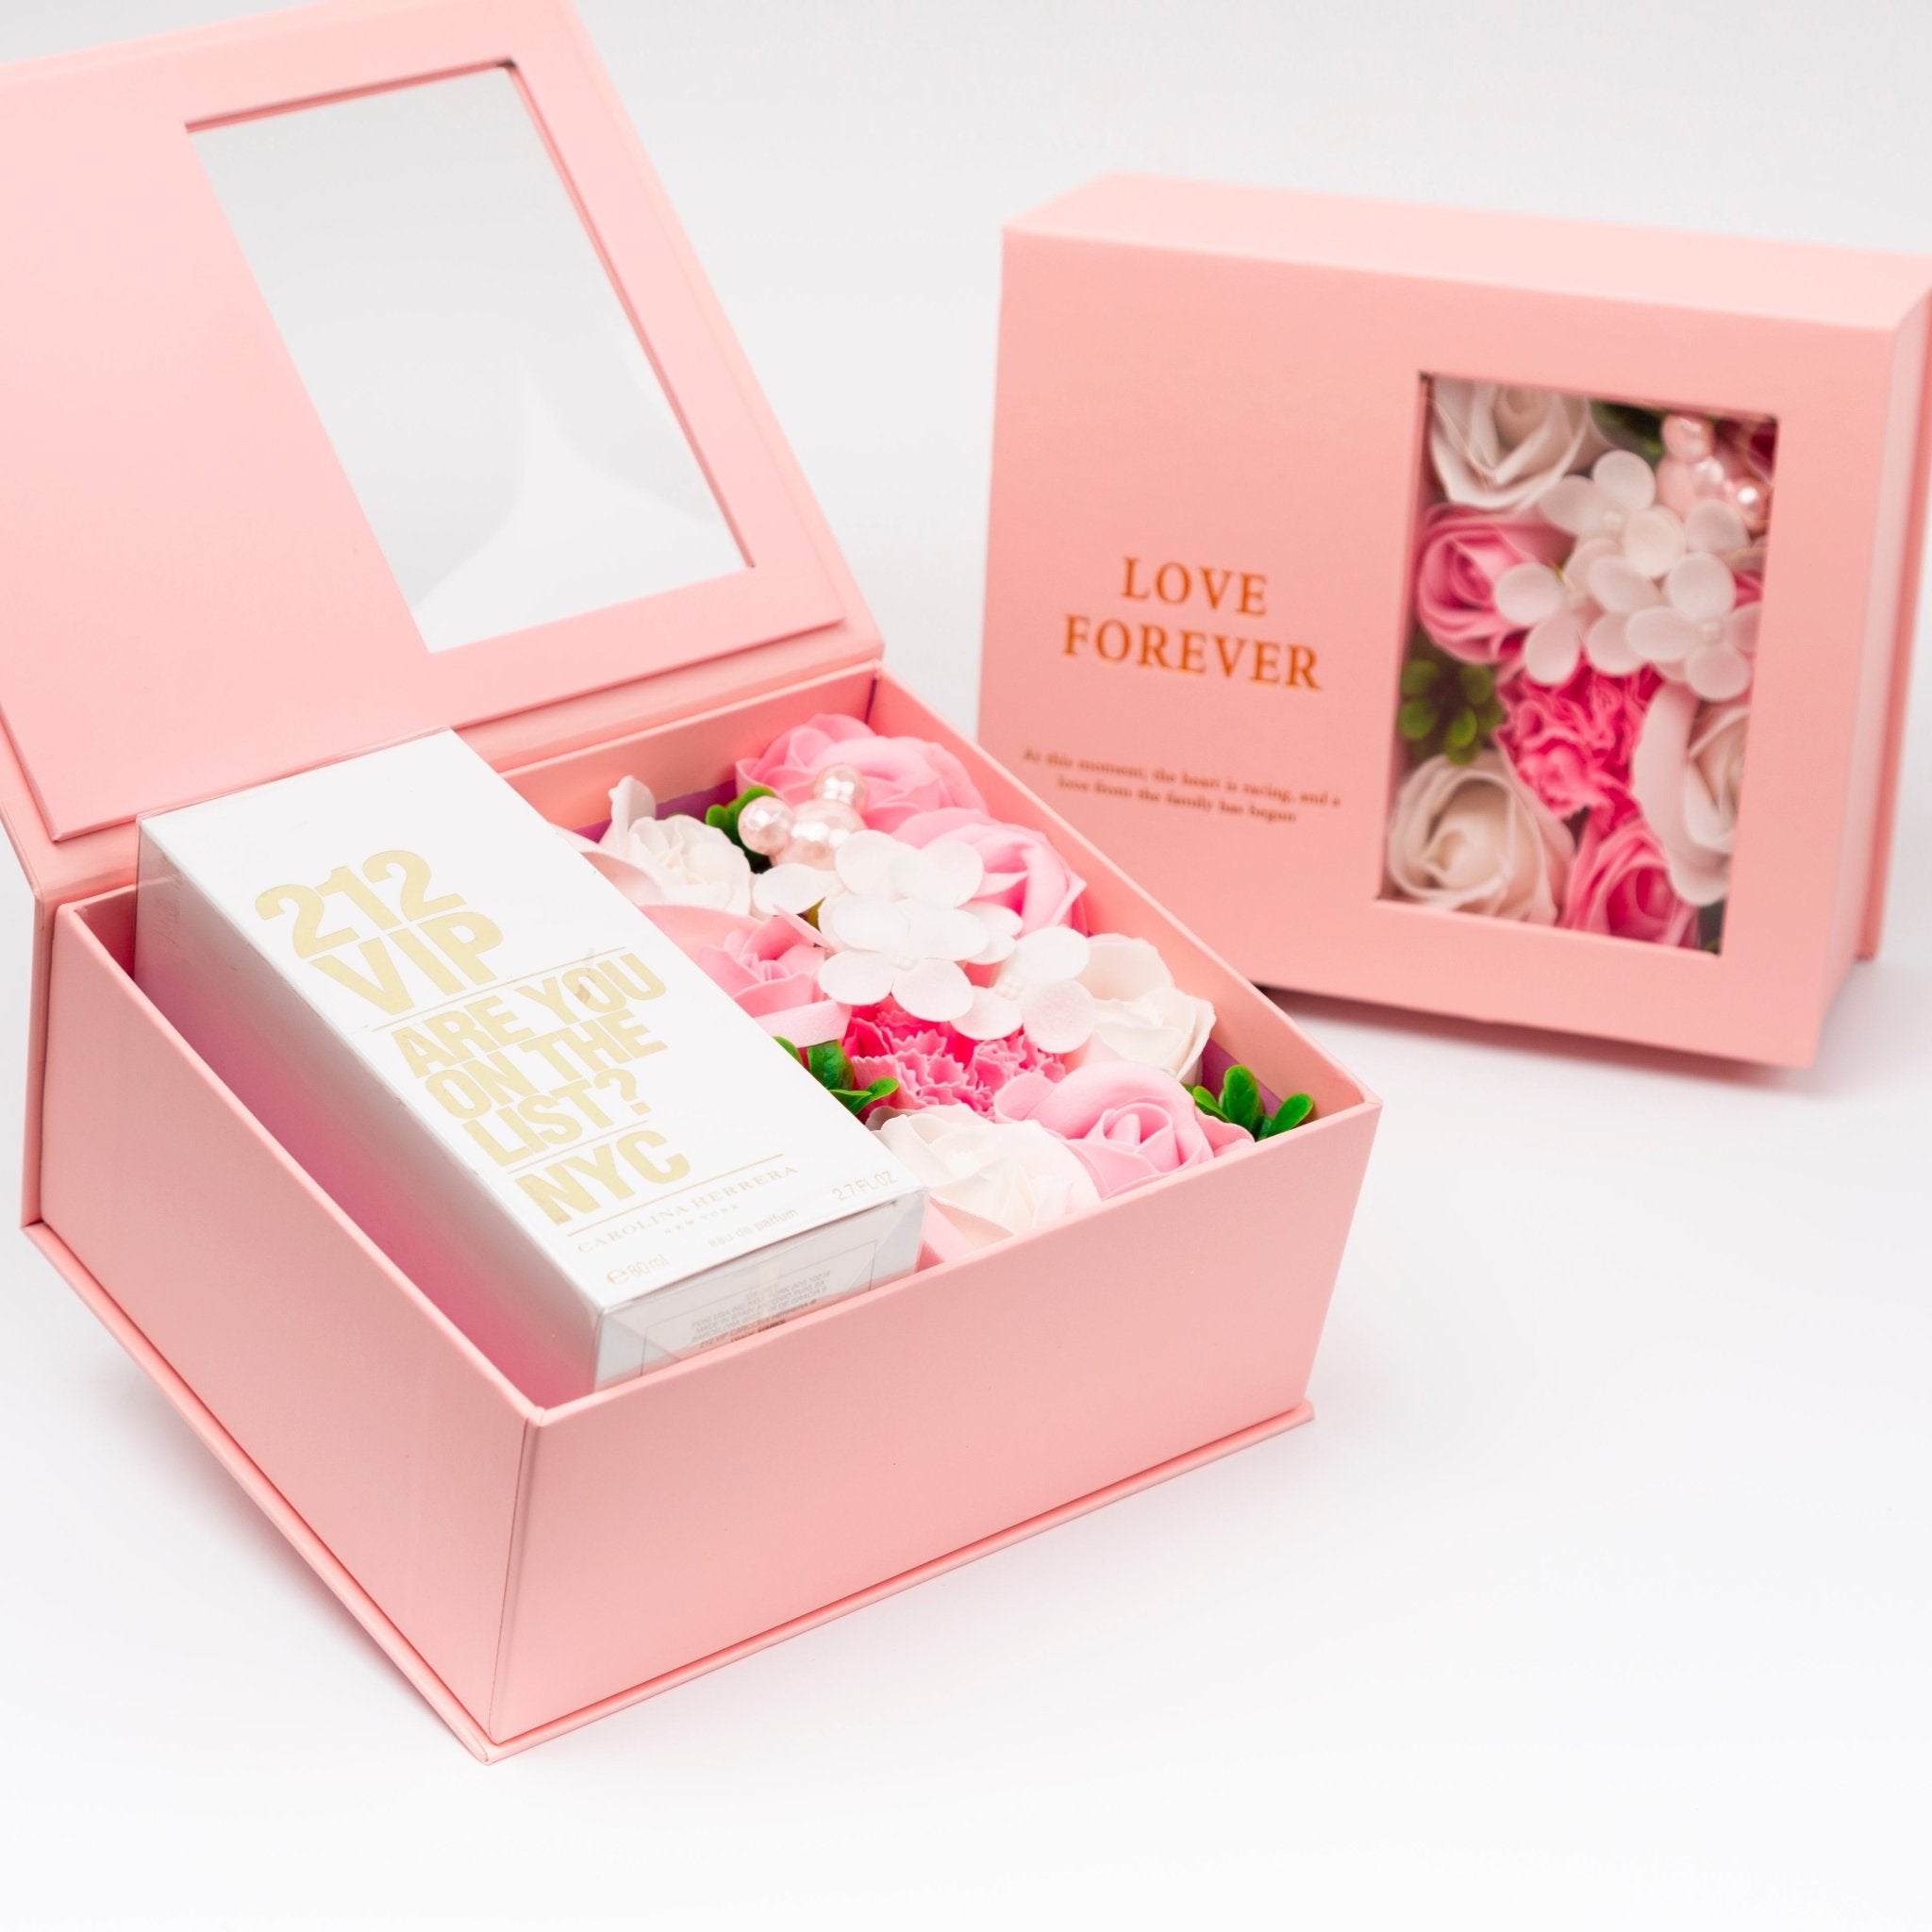 Flower Box - Perfume Gift For Women 26 - #shoFlower Box - Perfume Gift For Women 26p_name#Flower Box - Perfume Gift For Women 26Gift Boxes & TinsTakreemTakreem.joWomenPerfumeFlower Box - Perfume Gift For Women 26 - Takreem.jo